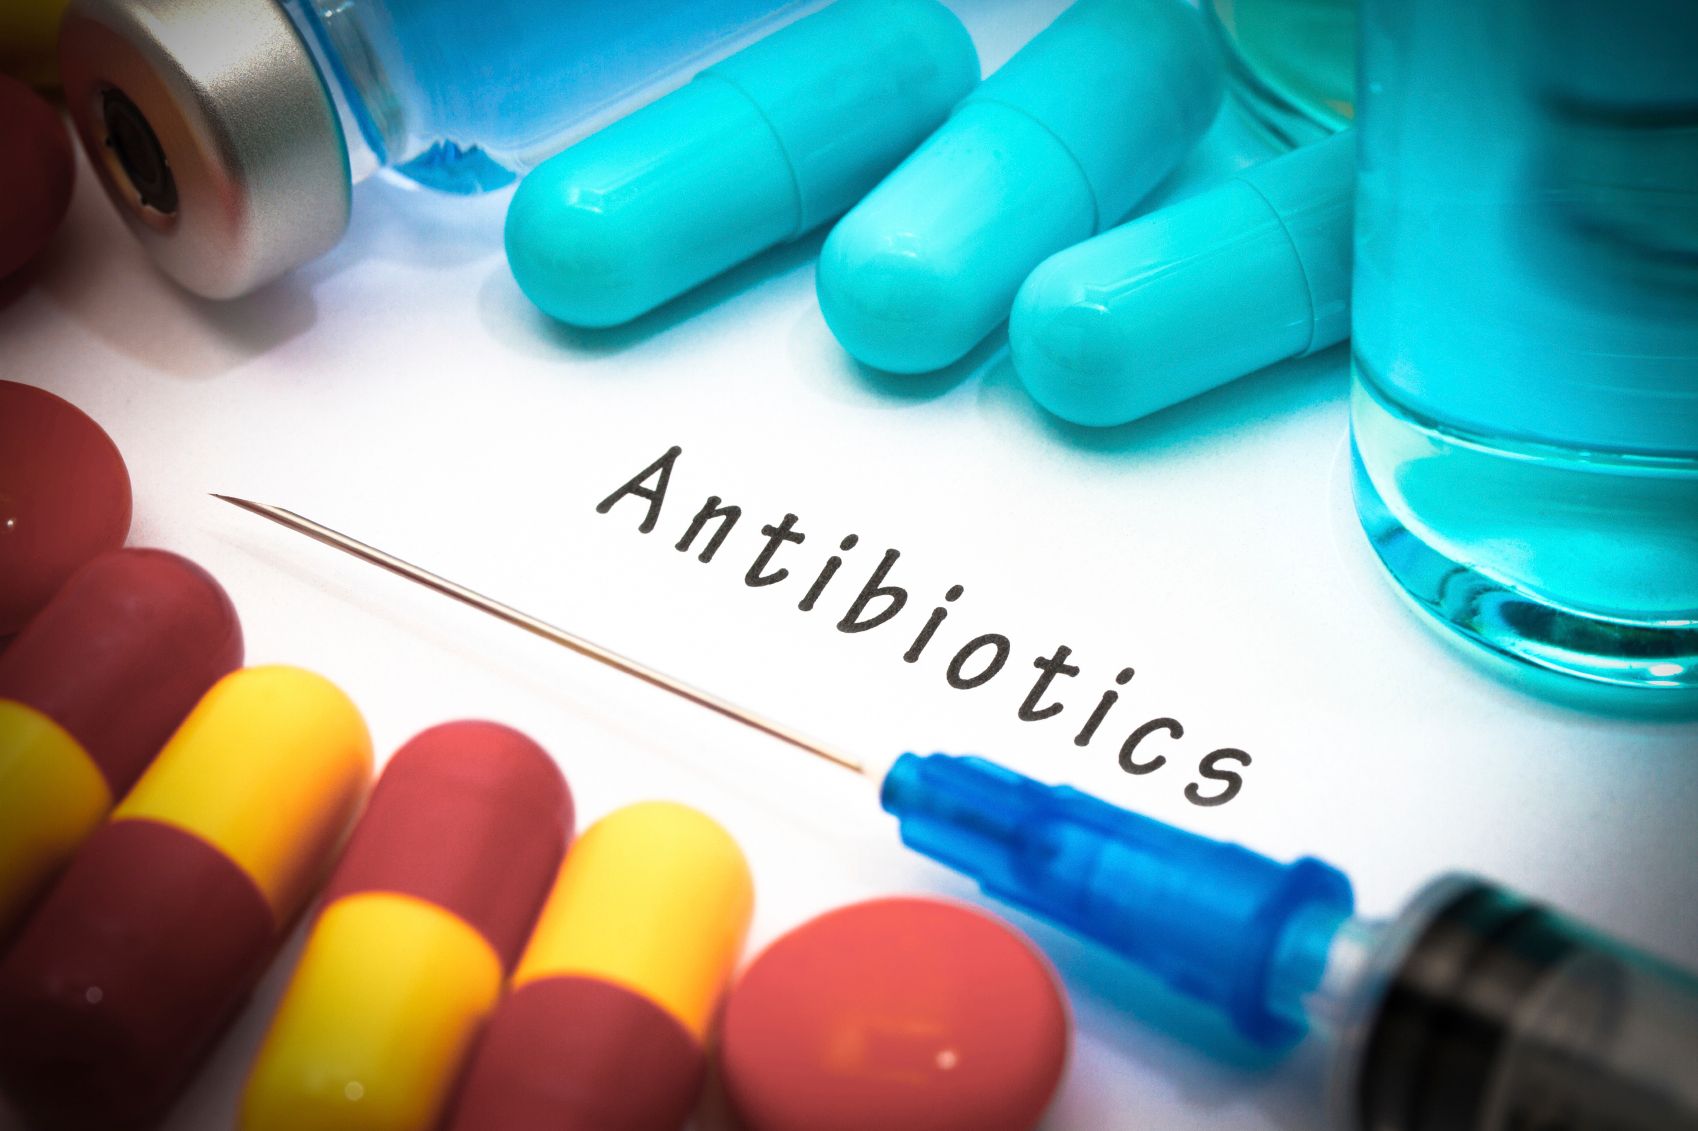 Antibiotico Rivoluzionario, Cresomicina, Apre Nuove Frontiere per Superare la Resistenza Antimicrobica